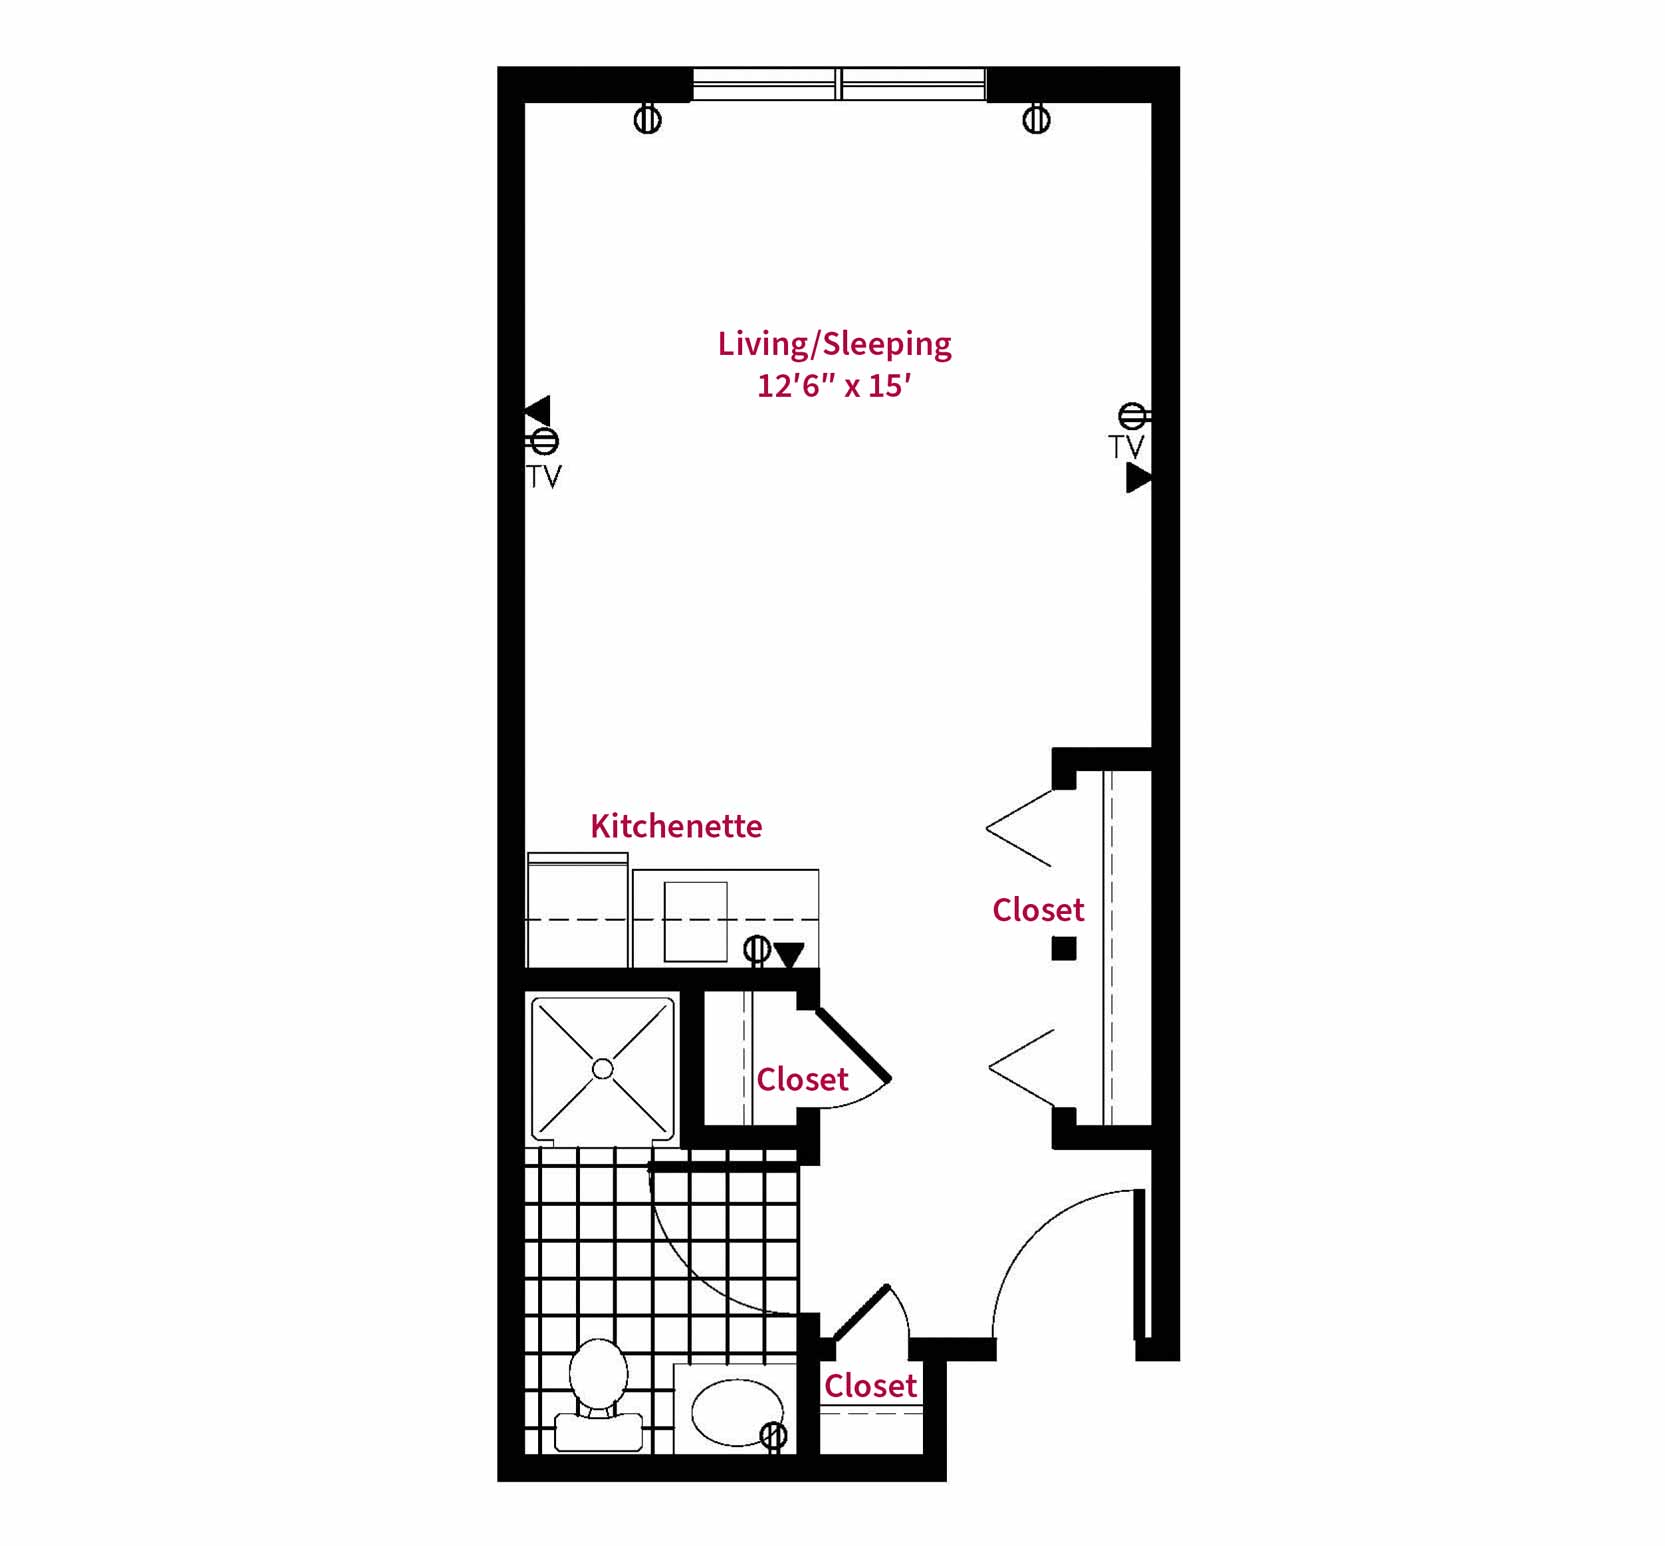 Simpson Meadows Assisted Living Floor Plan - Alyssum floor plan